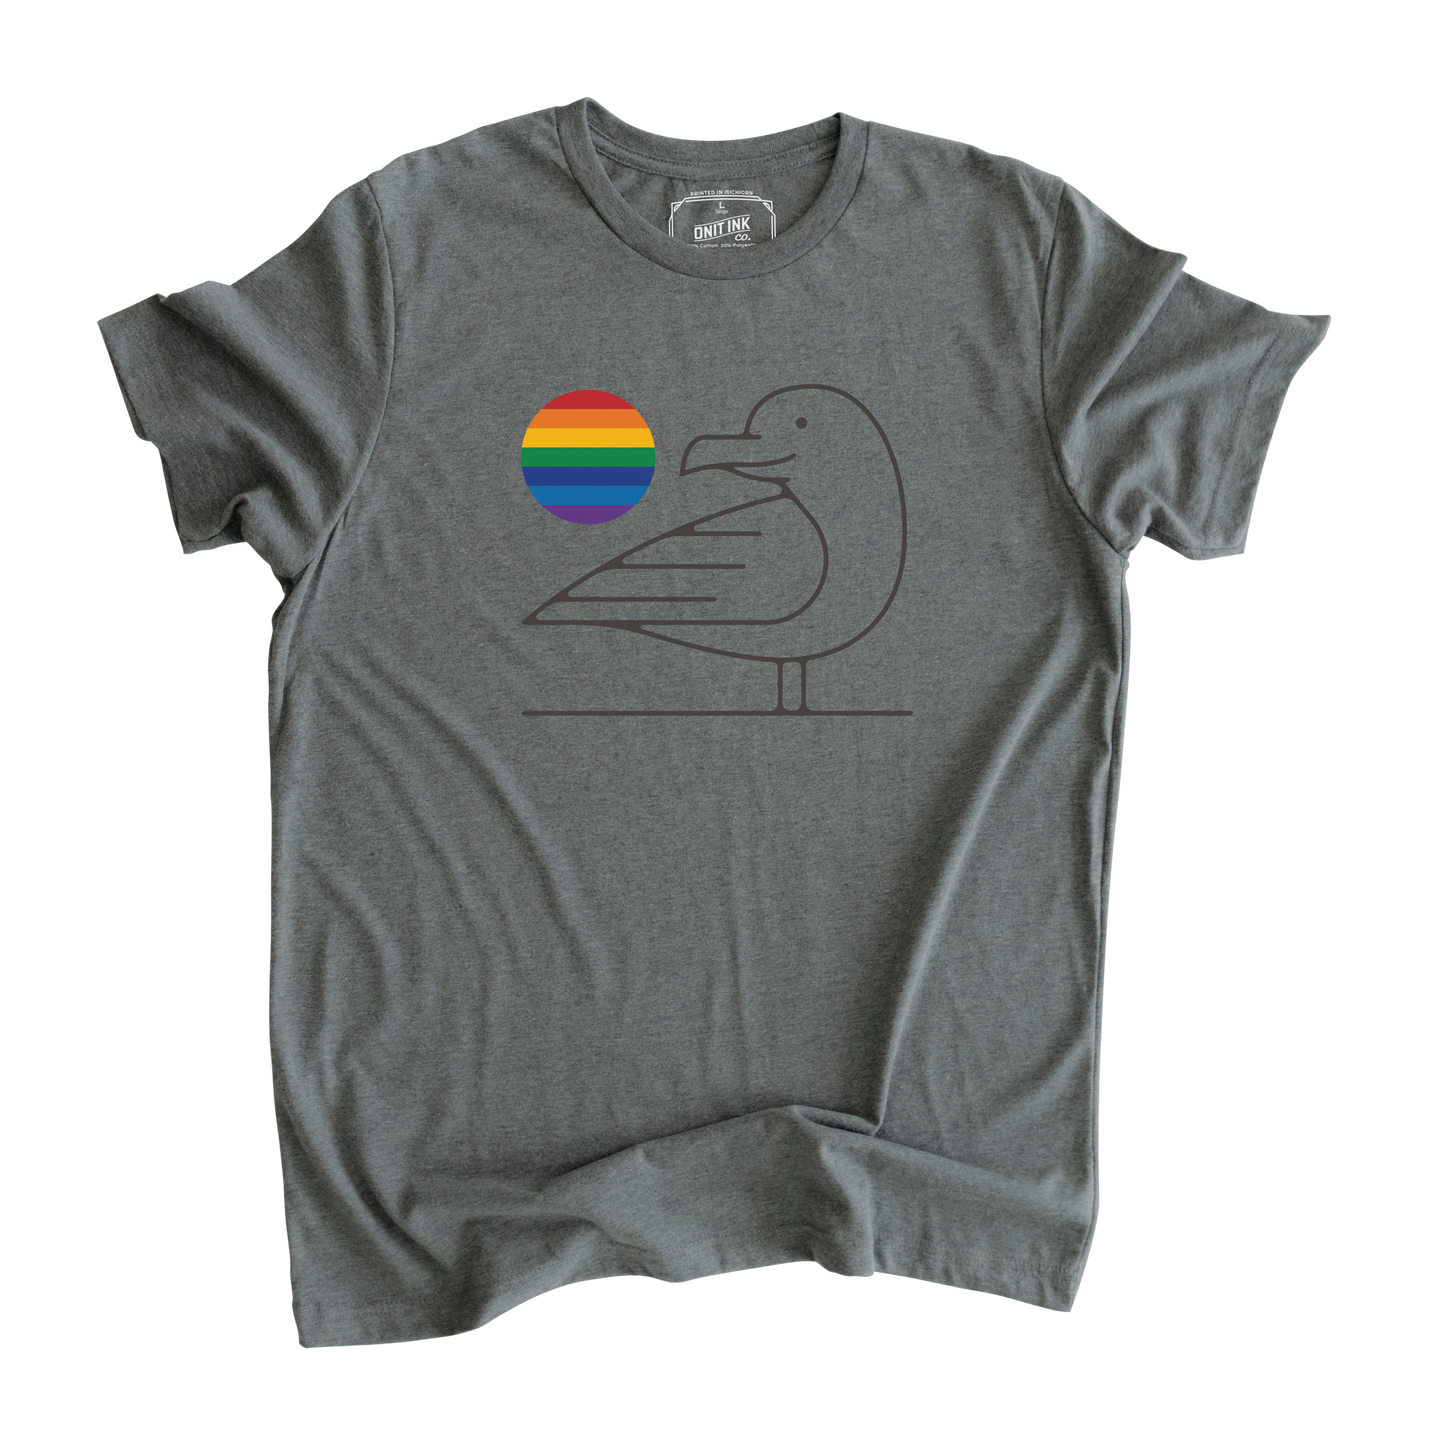 Love Bird T-Shirt